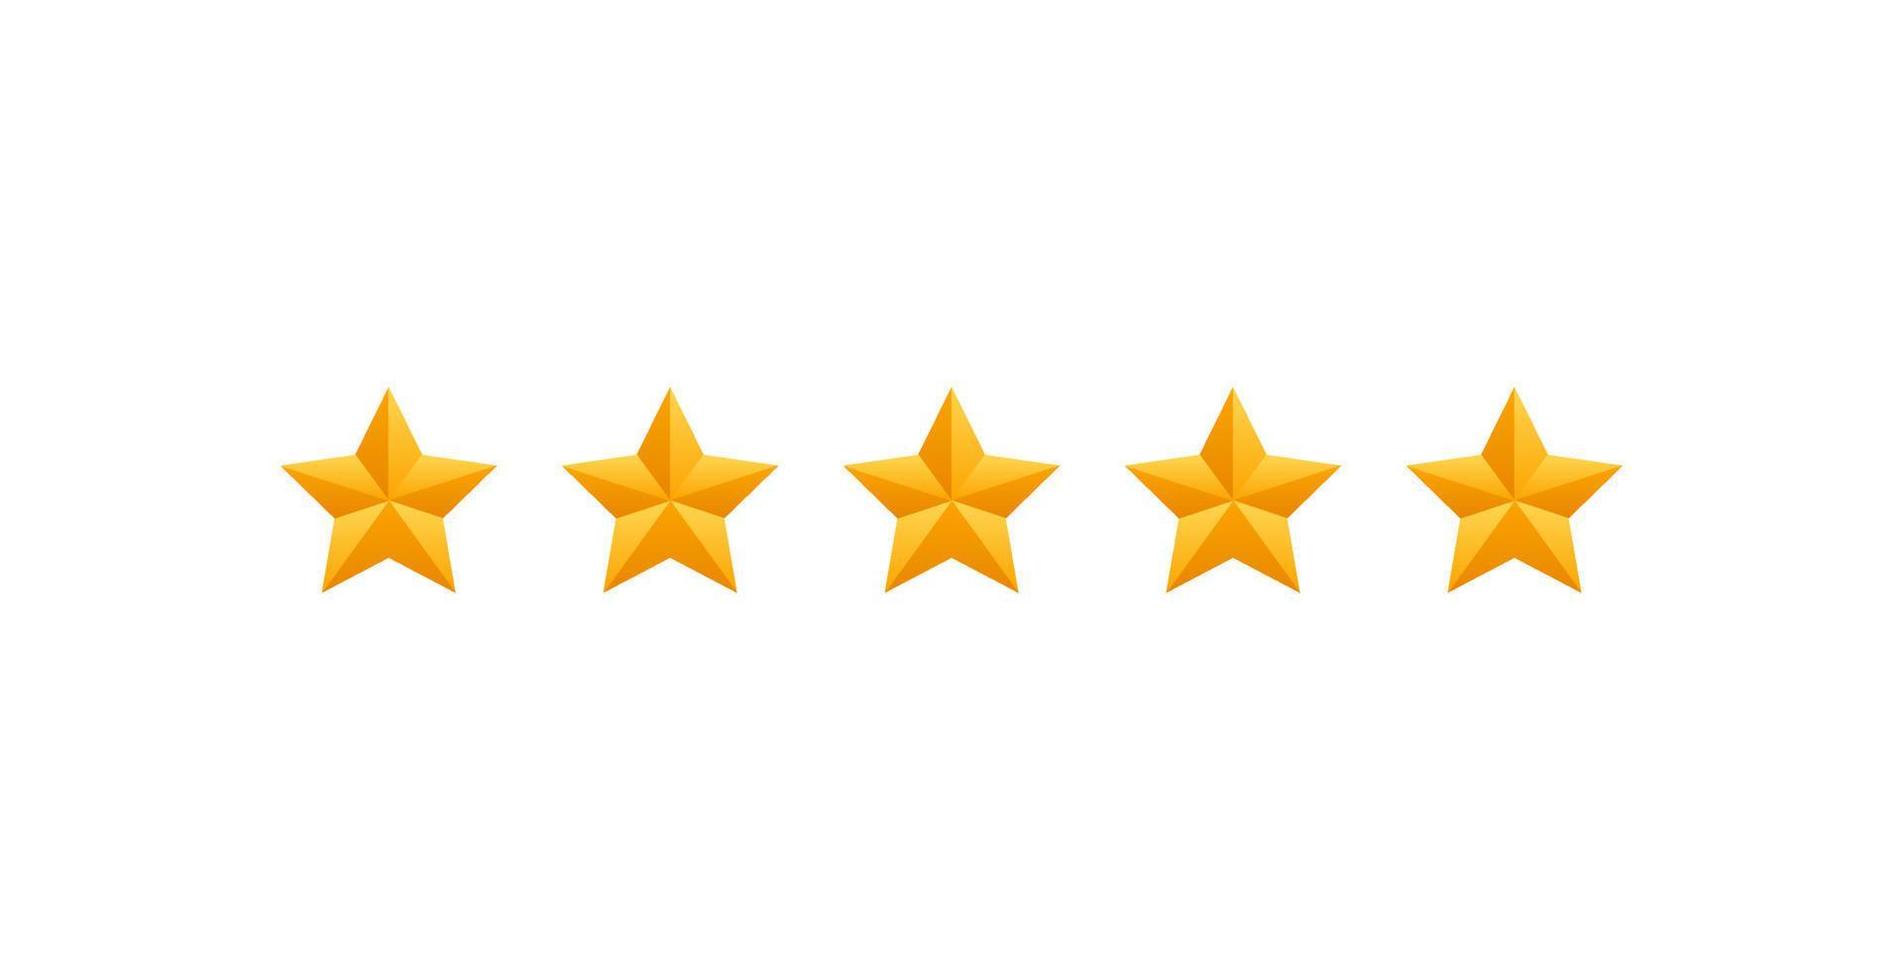 Revisión de 5 estrellas. icono de cinco estrellas doradas: tasa de servicio o señal de retroalimentación de calidad. ilustración vectorial de estilo plano. vector